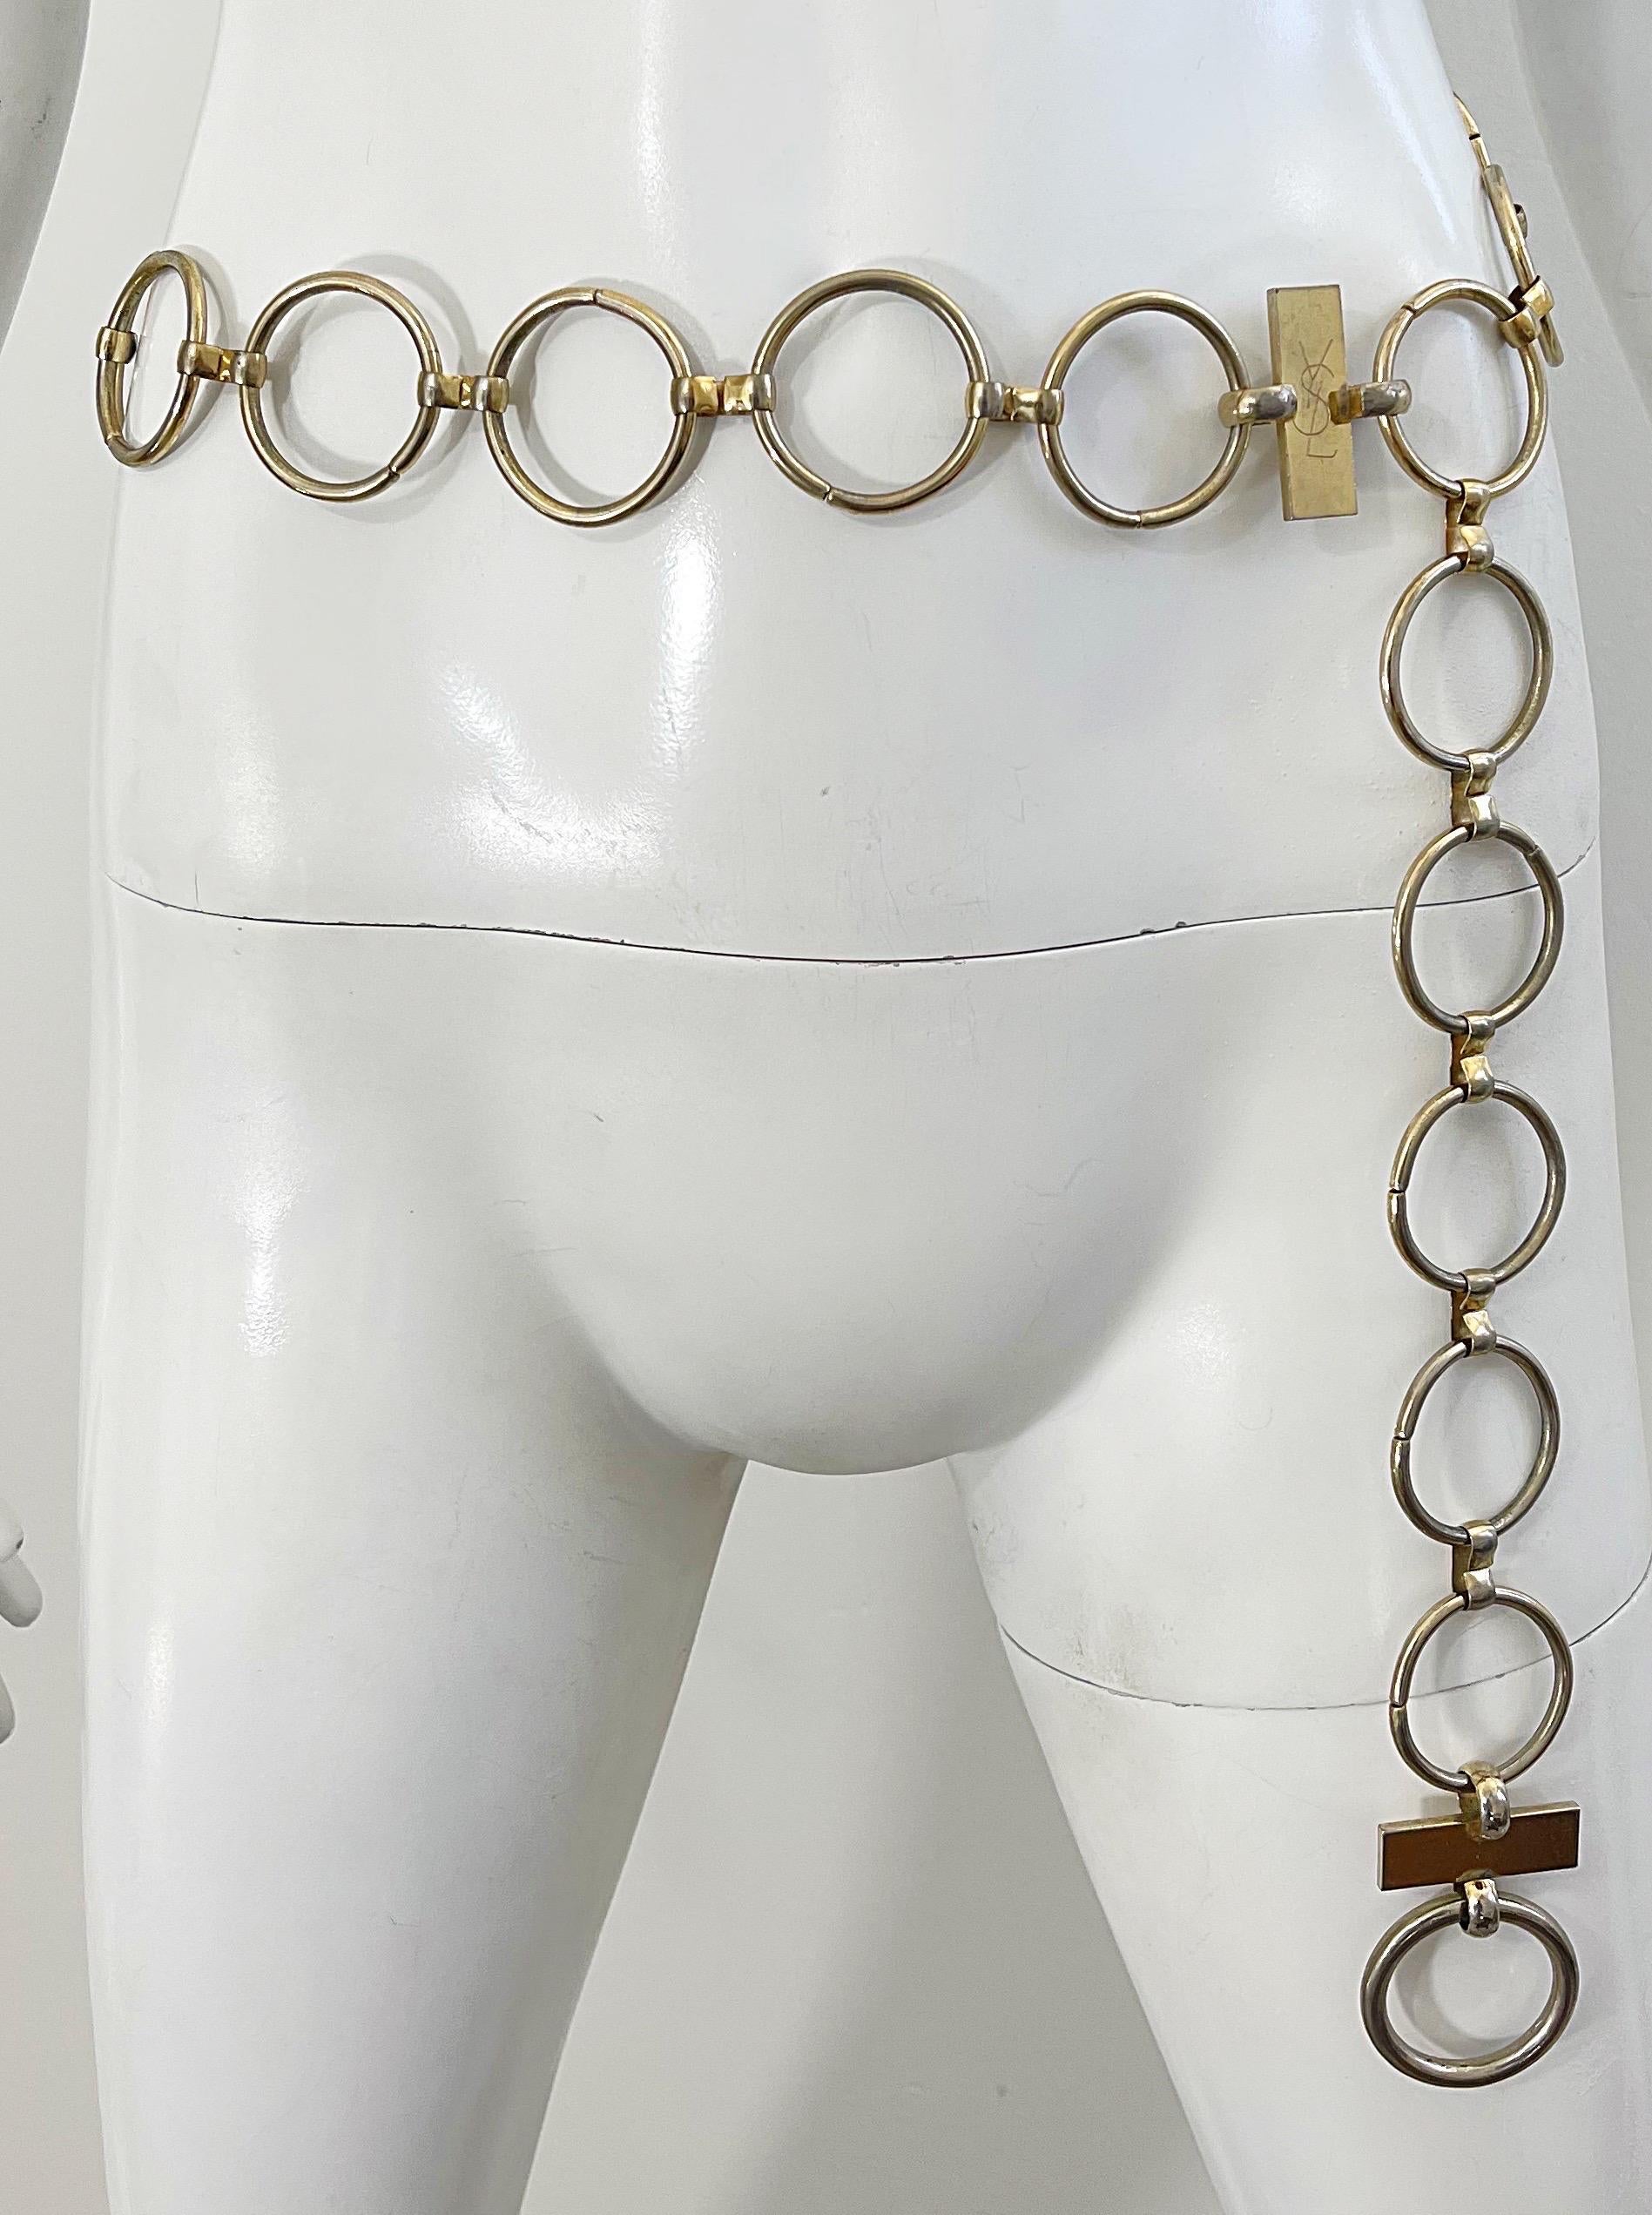 Seltene frühe 70er Jahre YSL Goldkette Link Ring Gürtel oder Halskette ! Dieses seltene Schmuckstück ist fast identisch mit dem, das Veruschka zu ihrem ikonischen Safarikleid trug. Kann leicht von einem Gürtel zu einer Halskette umfunktioniert